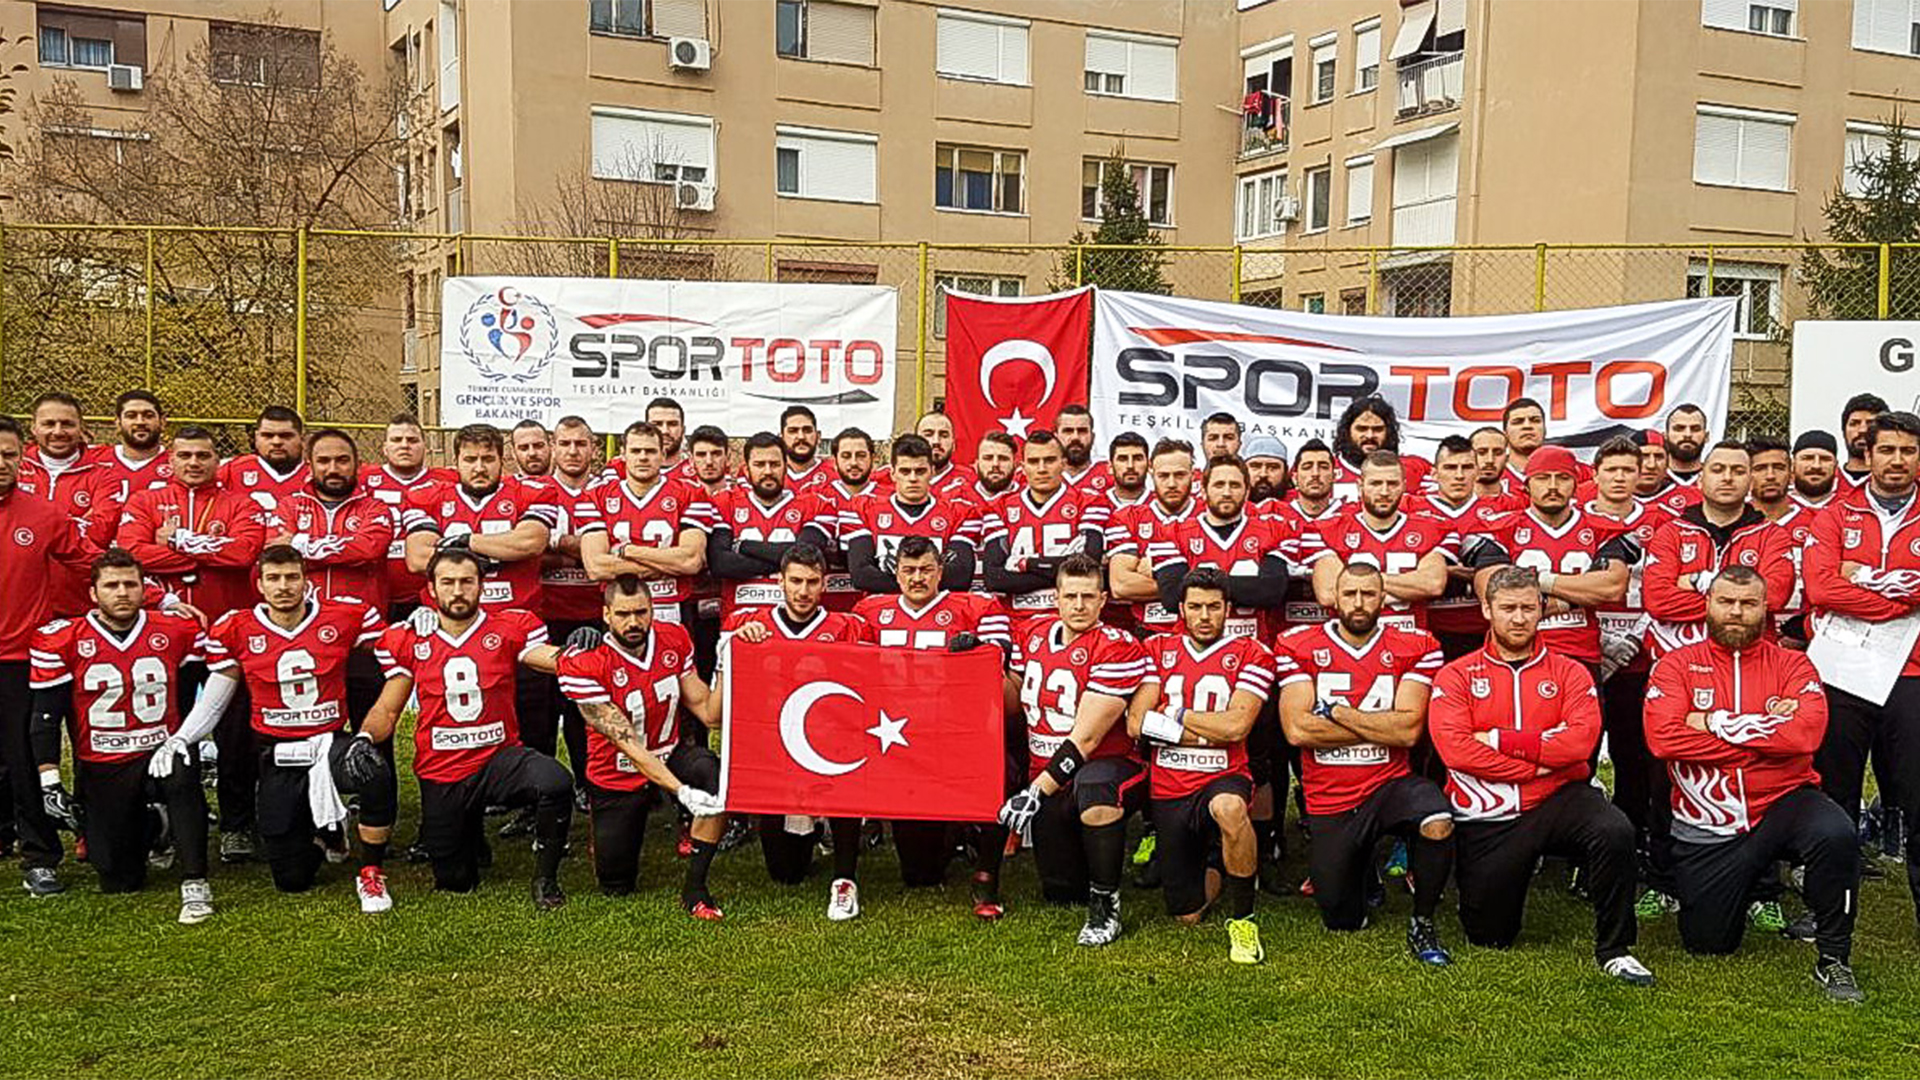 Amerikan Futbolu (Korumalı Futbol) Nedir? | Korumalı Futbol Türkiye